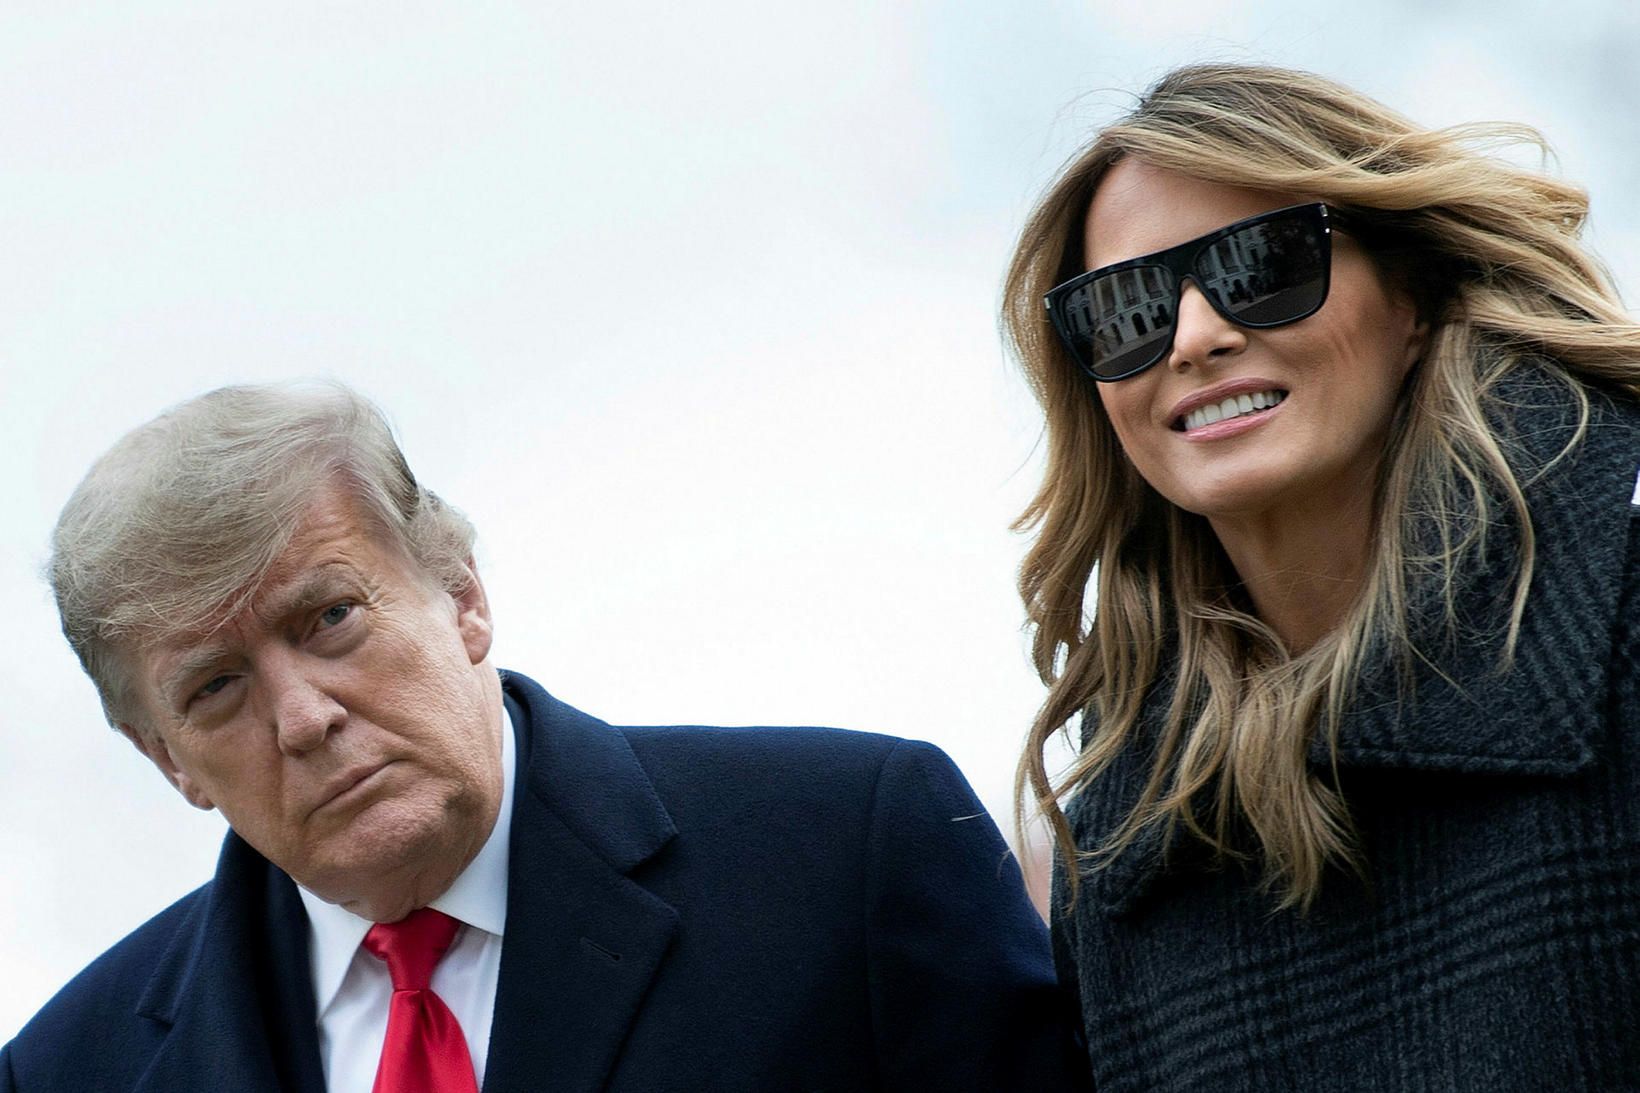 Donald og Melania Trump áttu 17 ára brúðkaupsafmæli um síðustu …